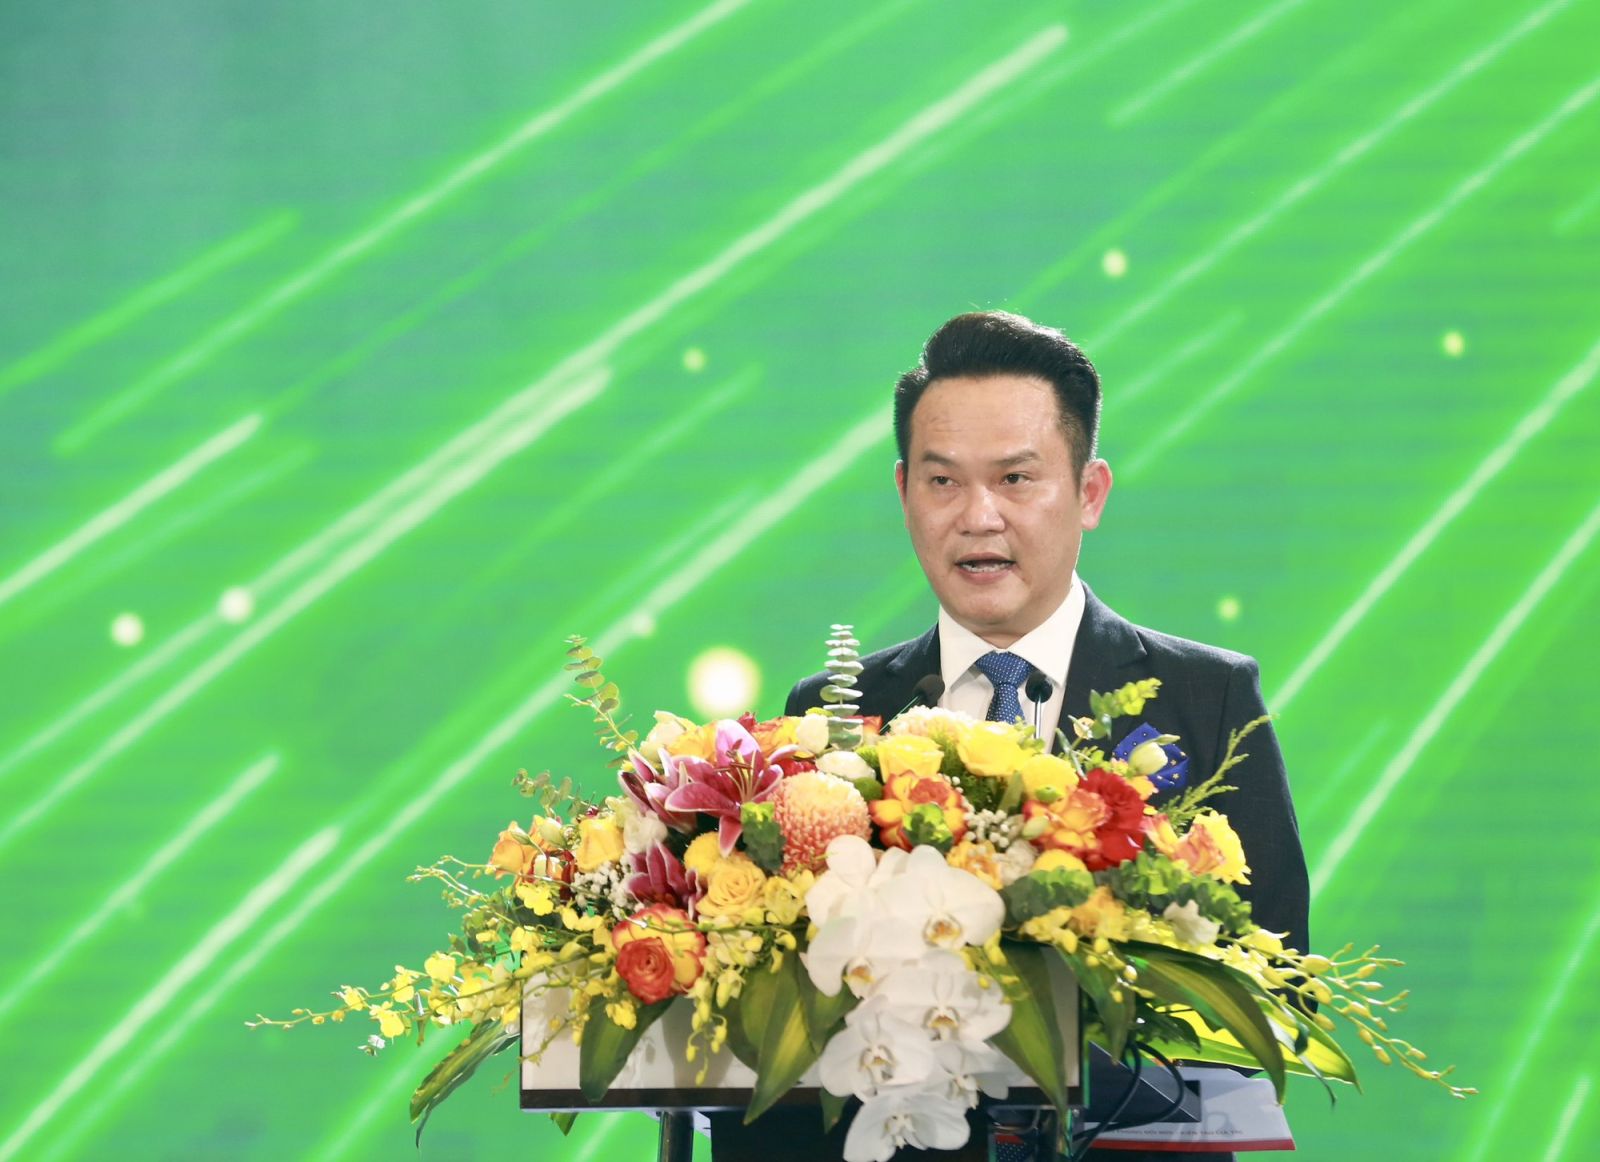 Ông Đặng Hồng Anh - Chủ tịch tập đoàn TTC, Chủ tịch Công ty TNHH MTV Đầu tư DHA kiêm Chủ tịch Hội doanh nhân trẻ Việt Nam khóa VI.